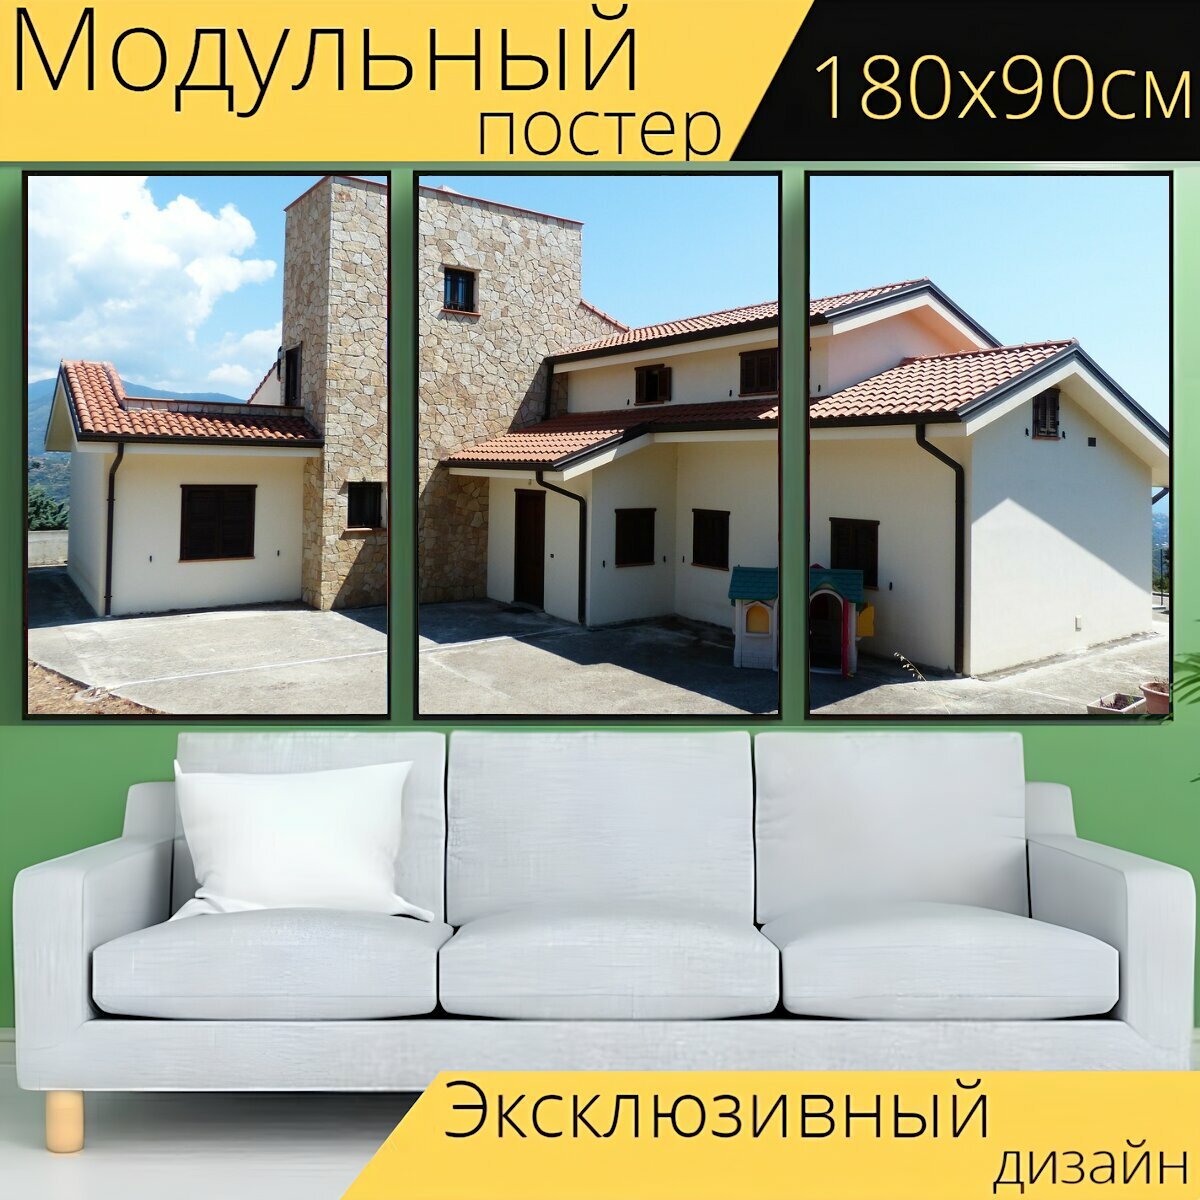 Модульный постер "Дом отдыха, вилла, архитектура" 180 x 90 см. для интерьера